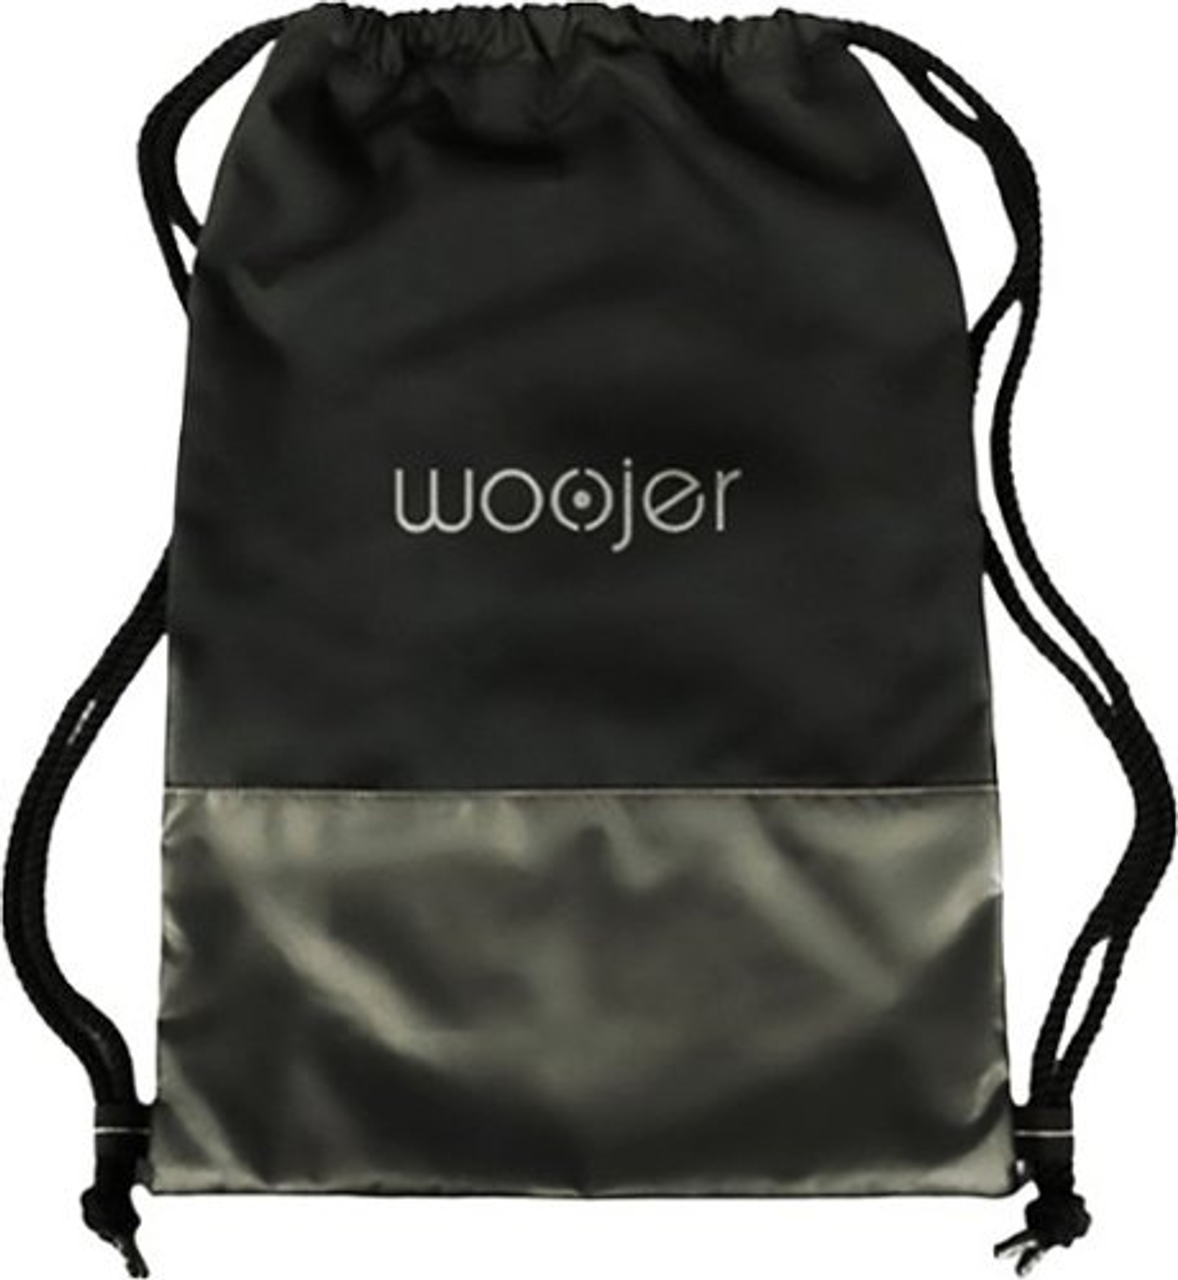 Woojer - Vest 3 Drawstring Bag - Black